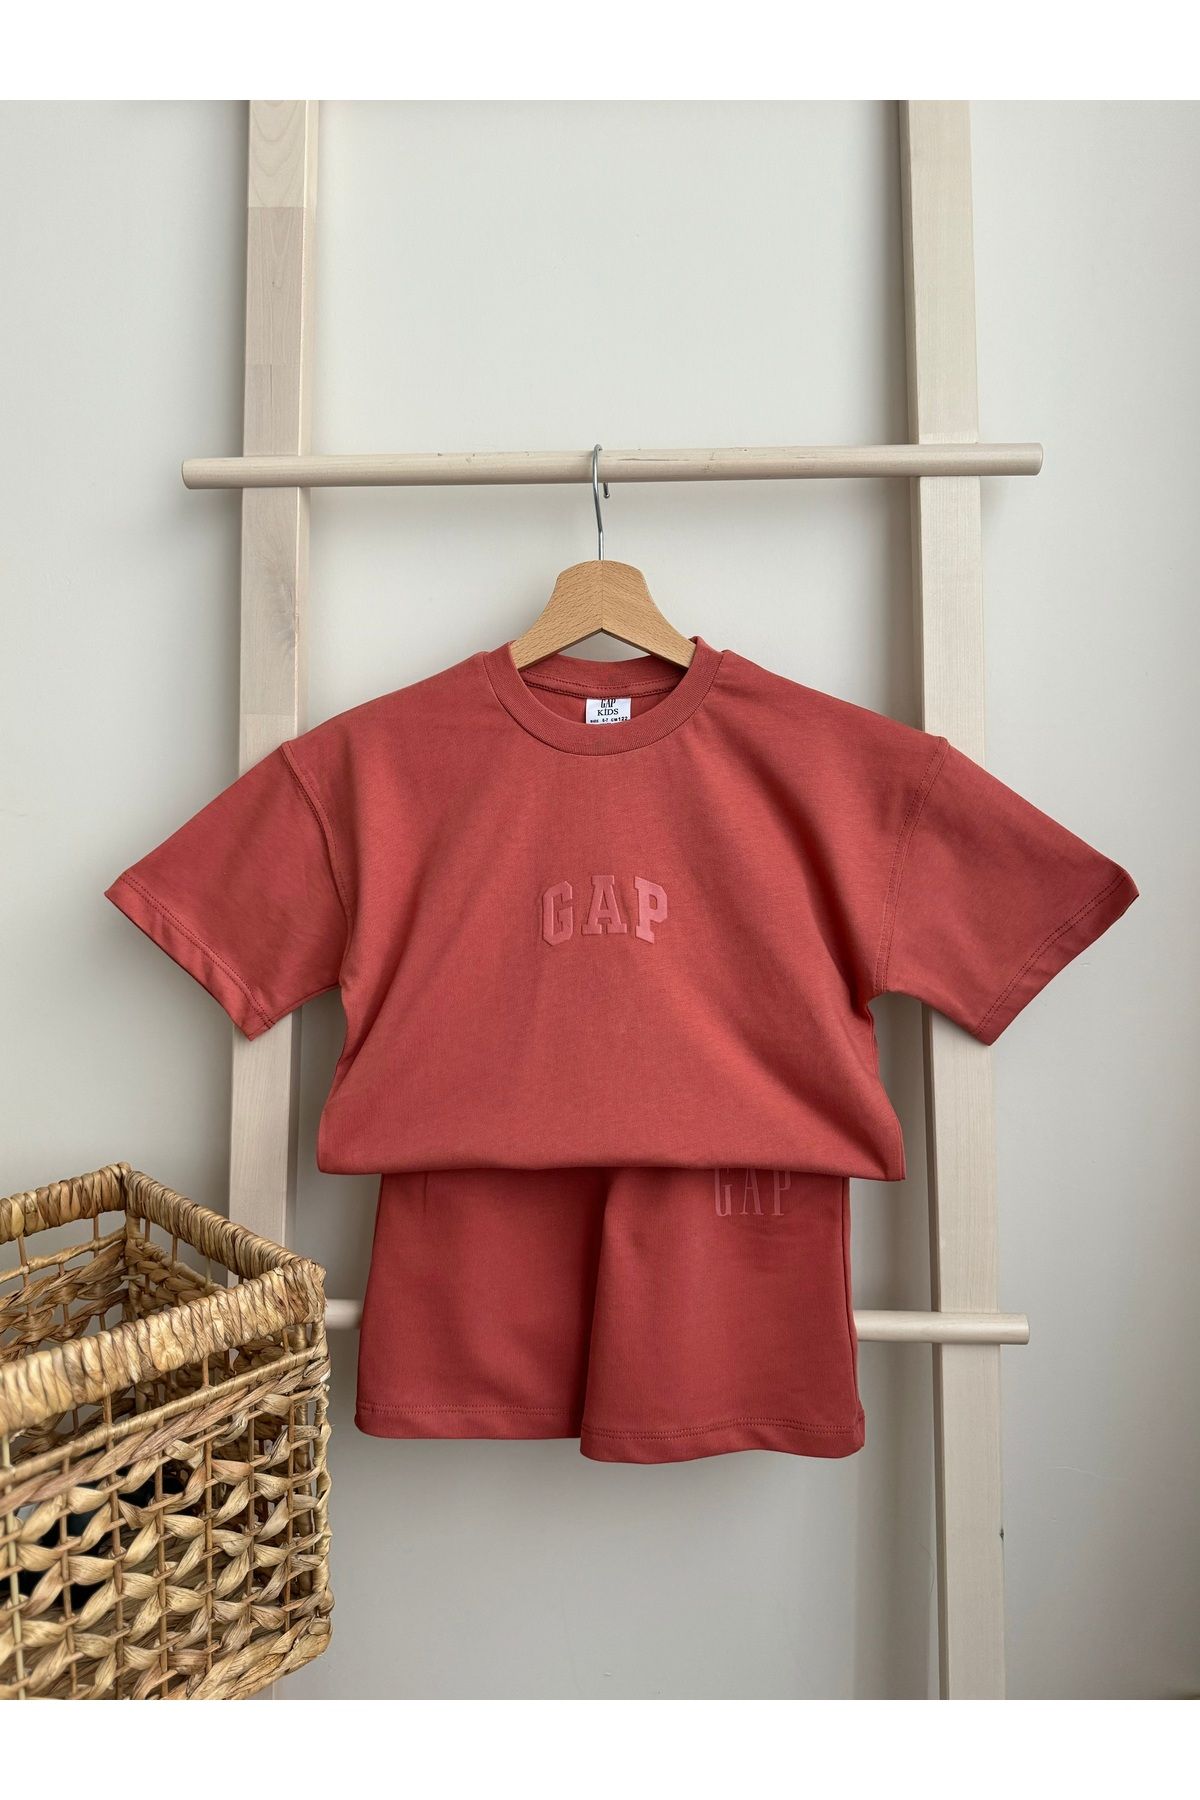 GAP Punch İşlemeli Gap Takım / Yazlık Gap Takım